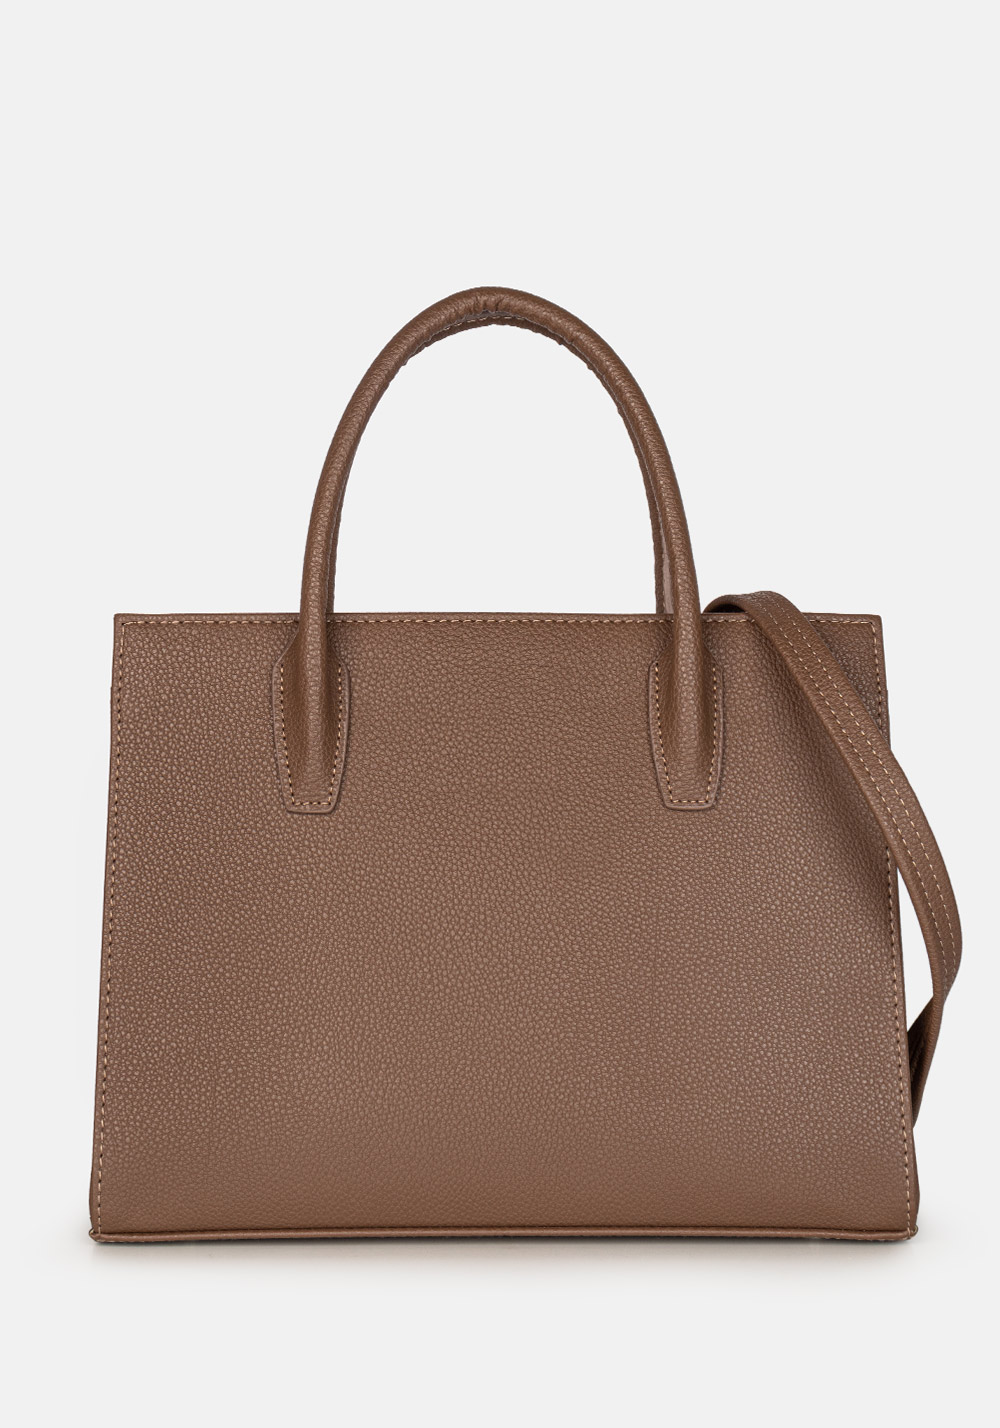 Женская сумка L-craft модель №1507 | кожзам | зернистая | цвет коричневый | Р900-9 | арт. 31777 - купить от производителя оптом и в розницу